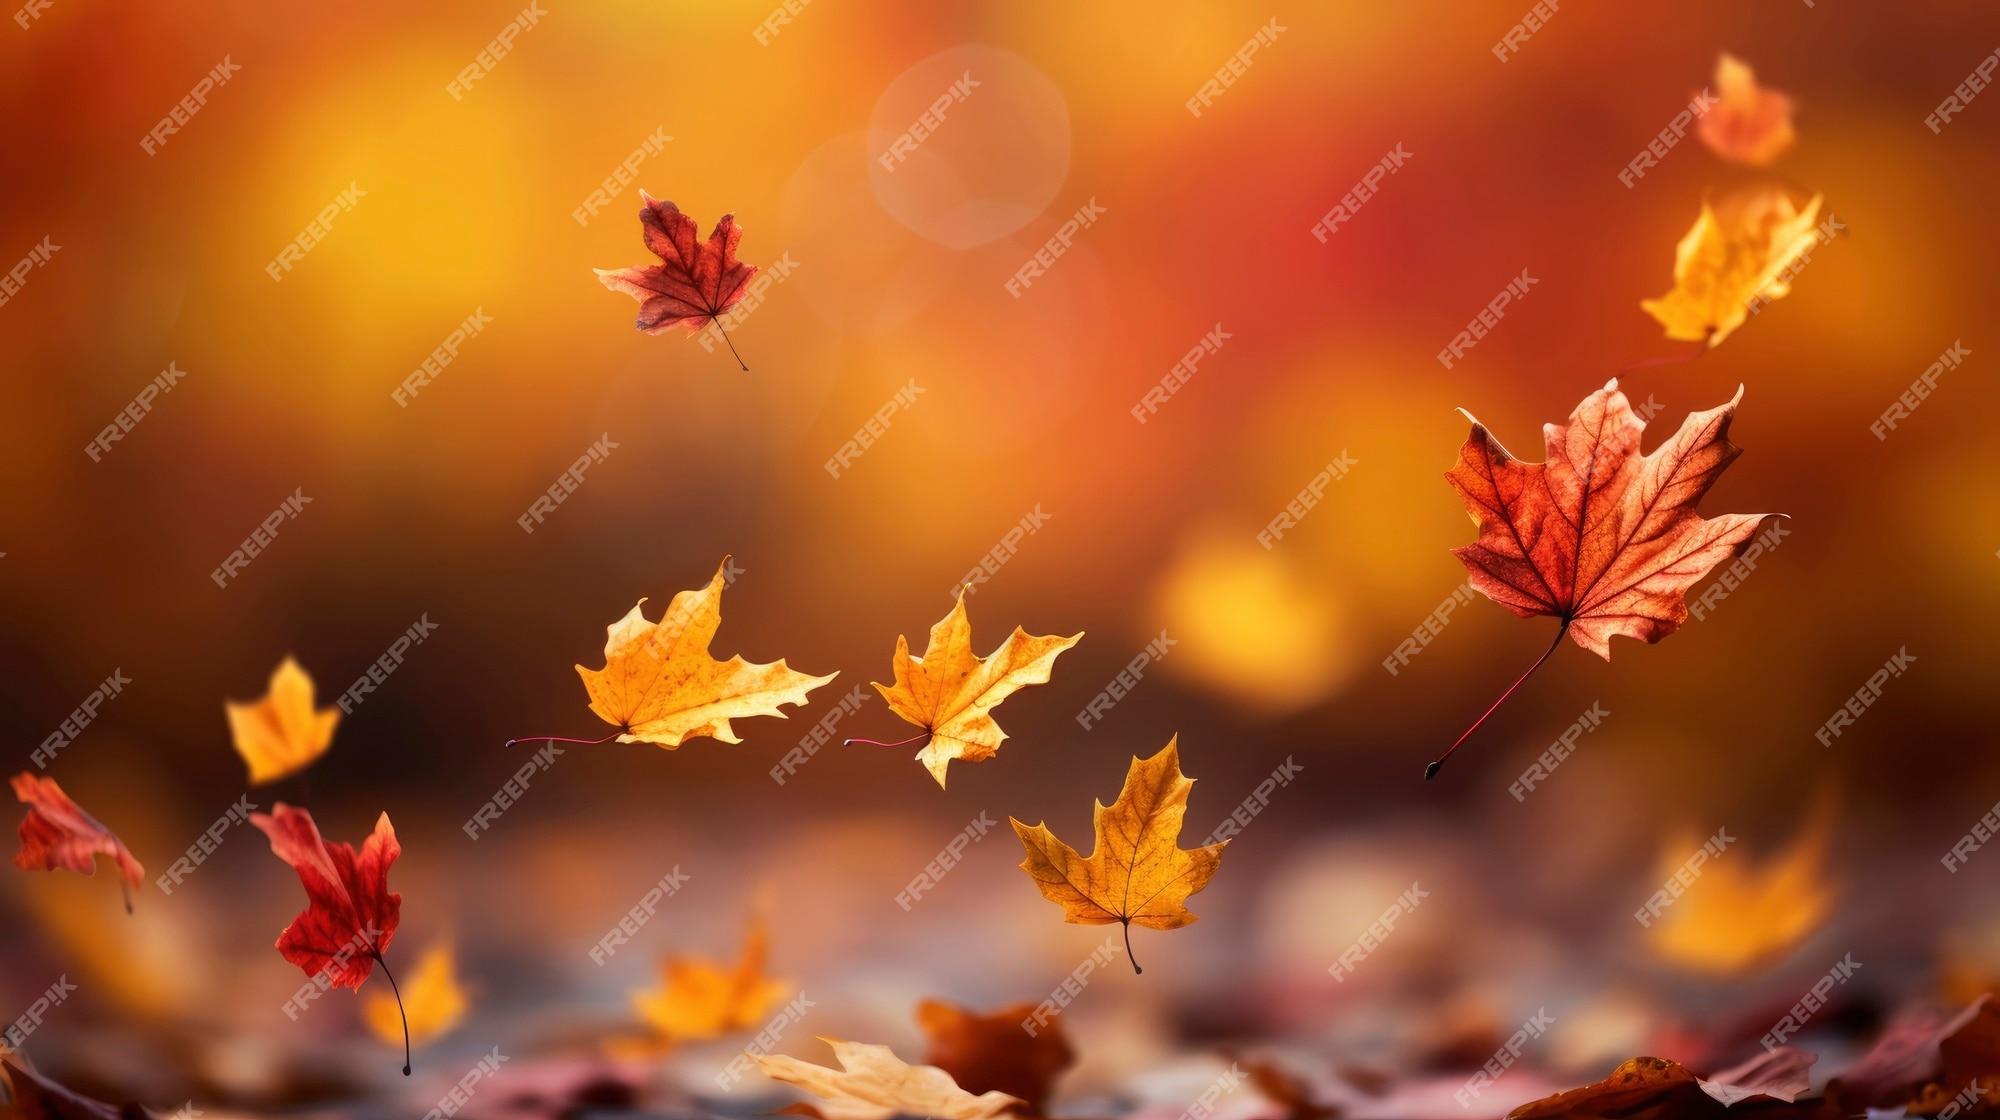 Autumn Wallpaper Image On Pik